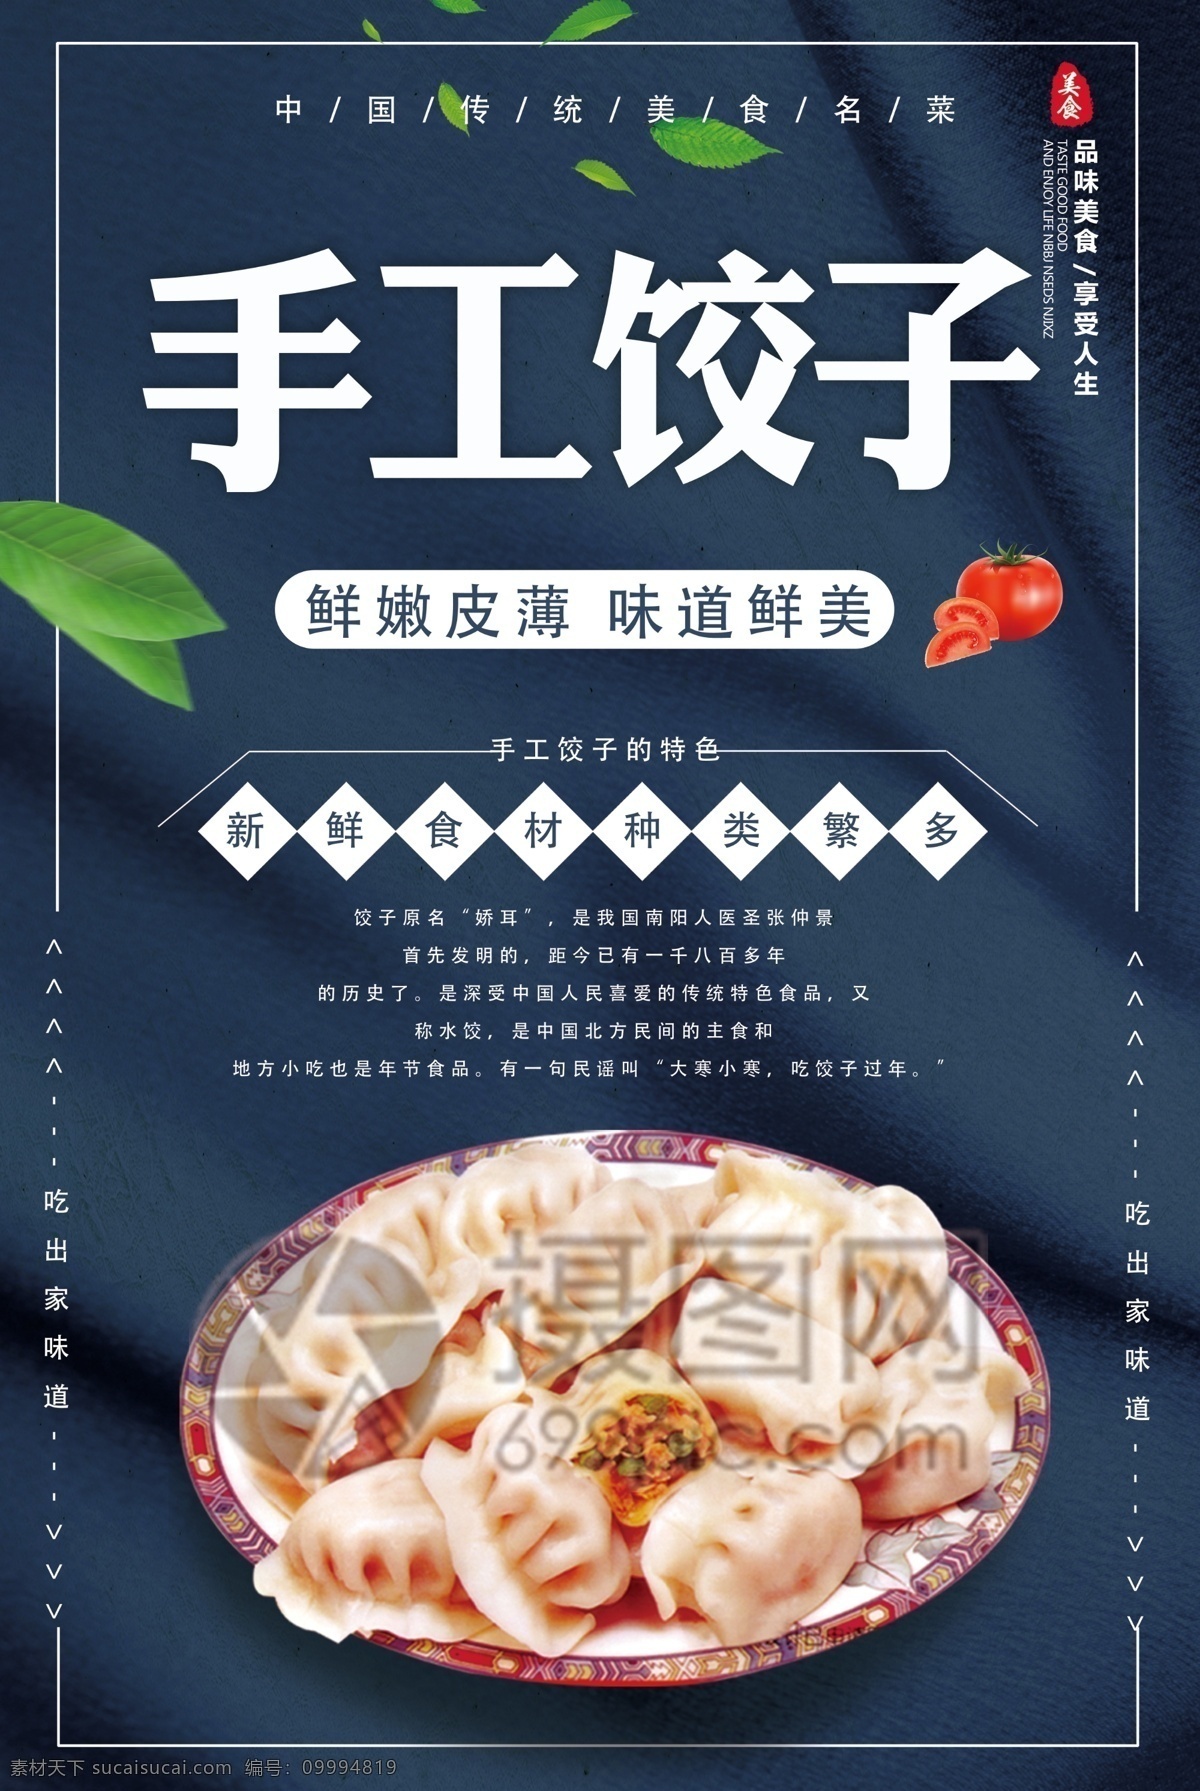 手工 饺子 美食 海报 中国饺子 手工饺子 饺子海报 中国味道 美味饺子 美食海报 水饺 促销